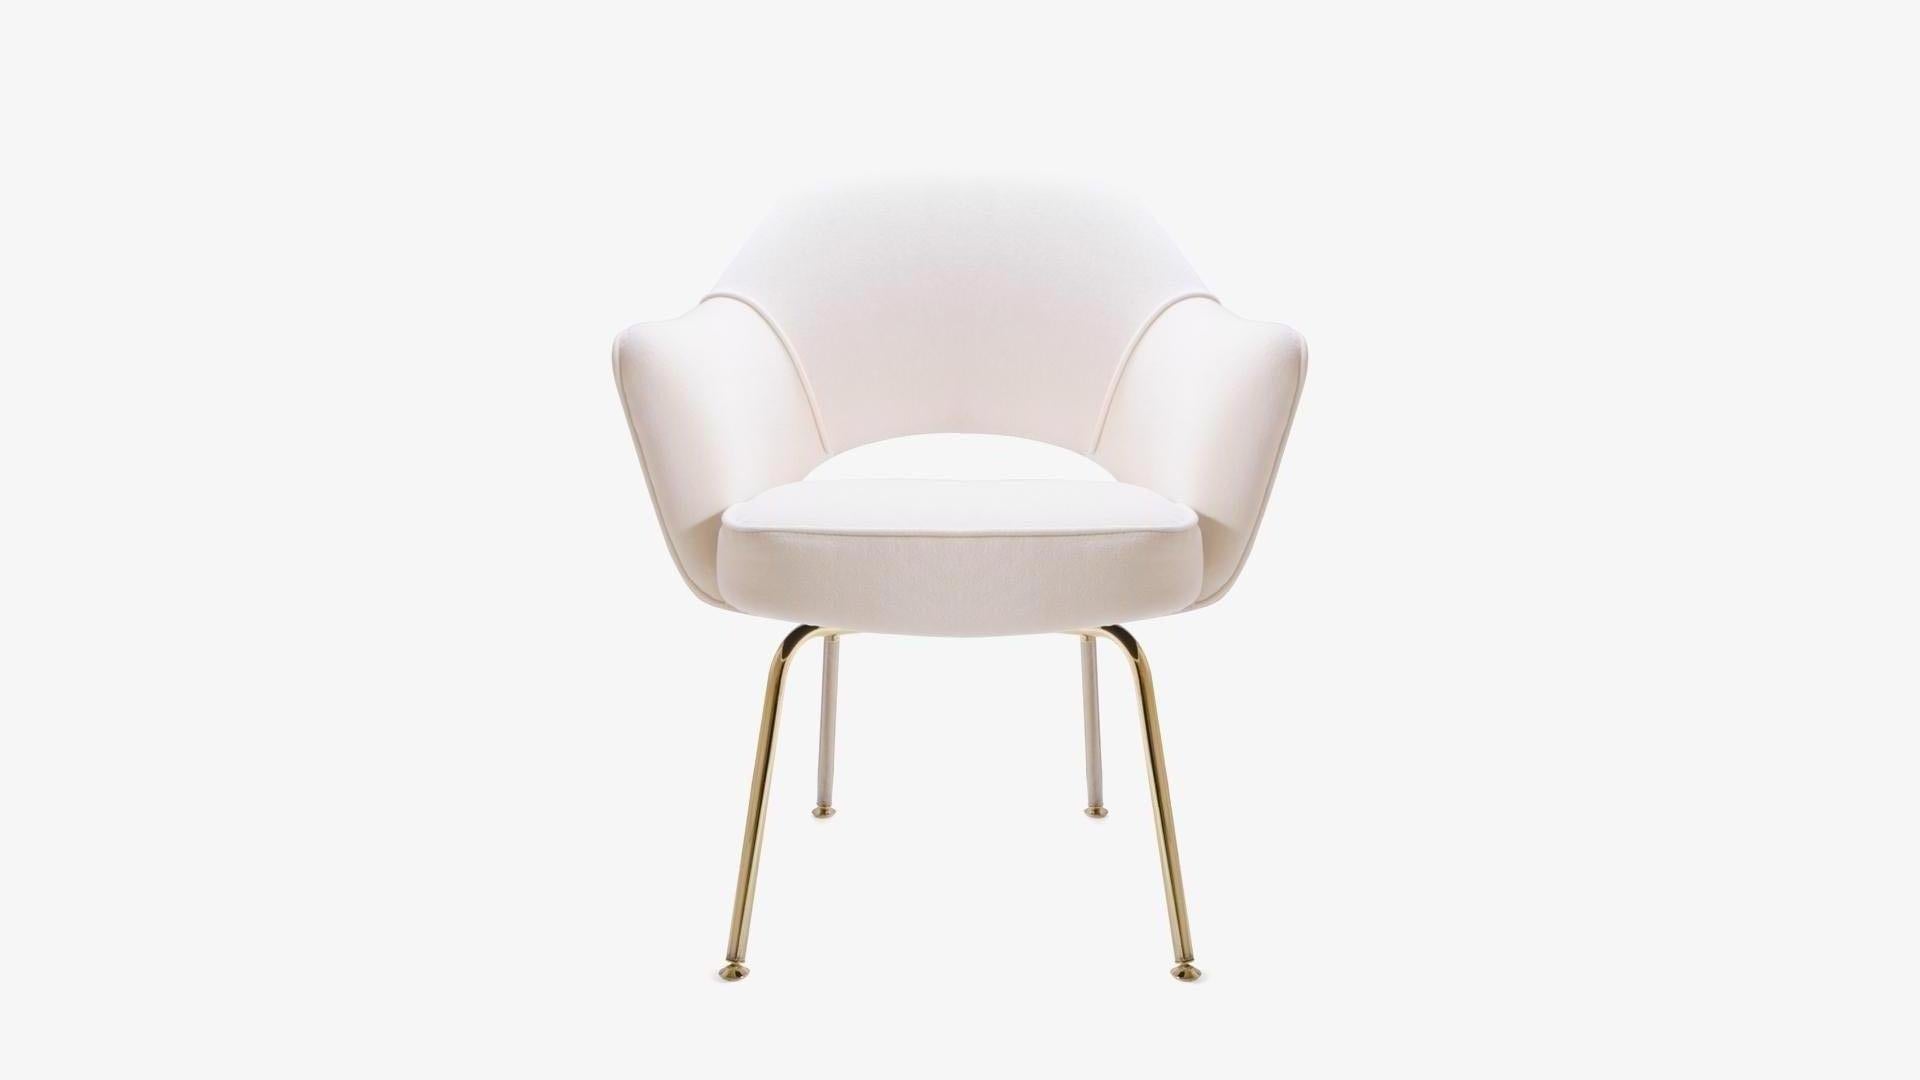 Vintage authentique fauteuil de direction d'Eero Saarinen. Entièrement restauré avec une touche d'or.
Depuis des années, nous restaurons des fauteuils de direction Saarinen dans tous les tissus possibles et imaginables, dans notre propre atelier.